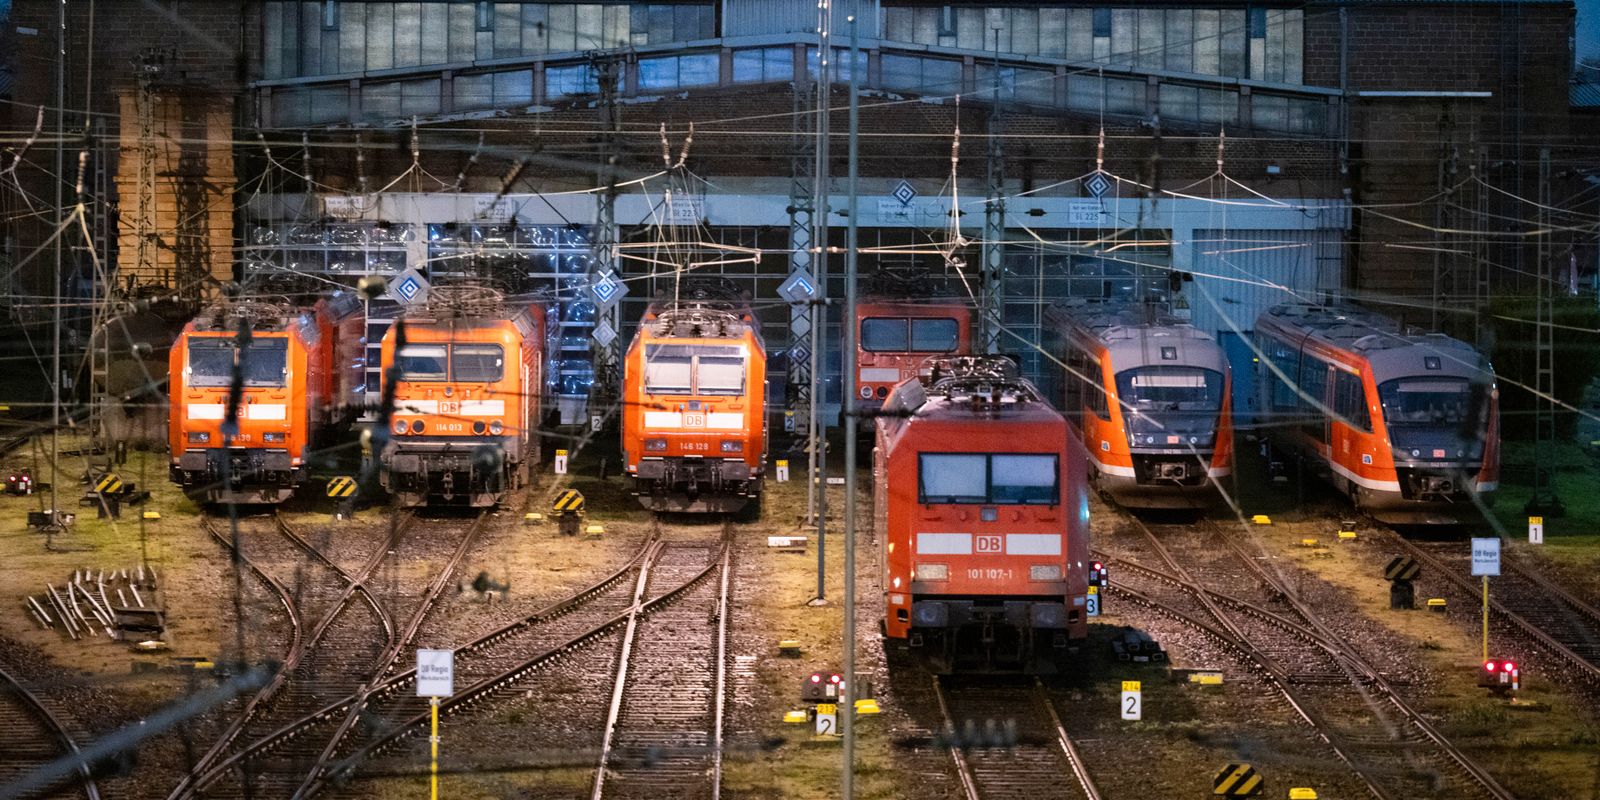 tågstrejk i tyskland inledd – tros kosta en miljard euro